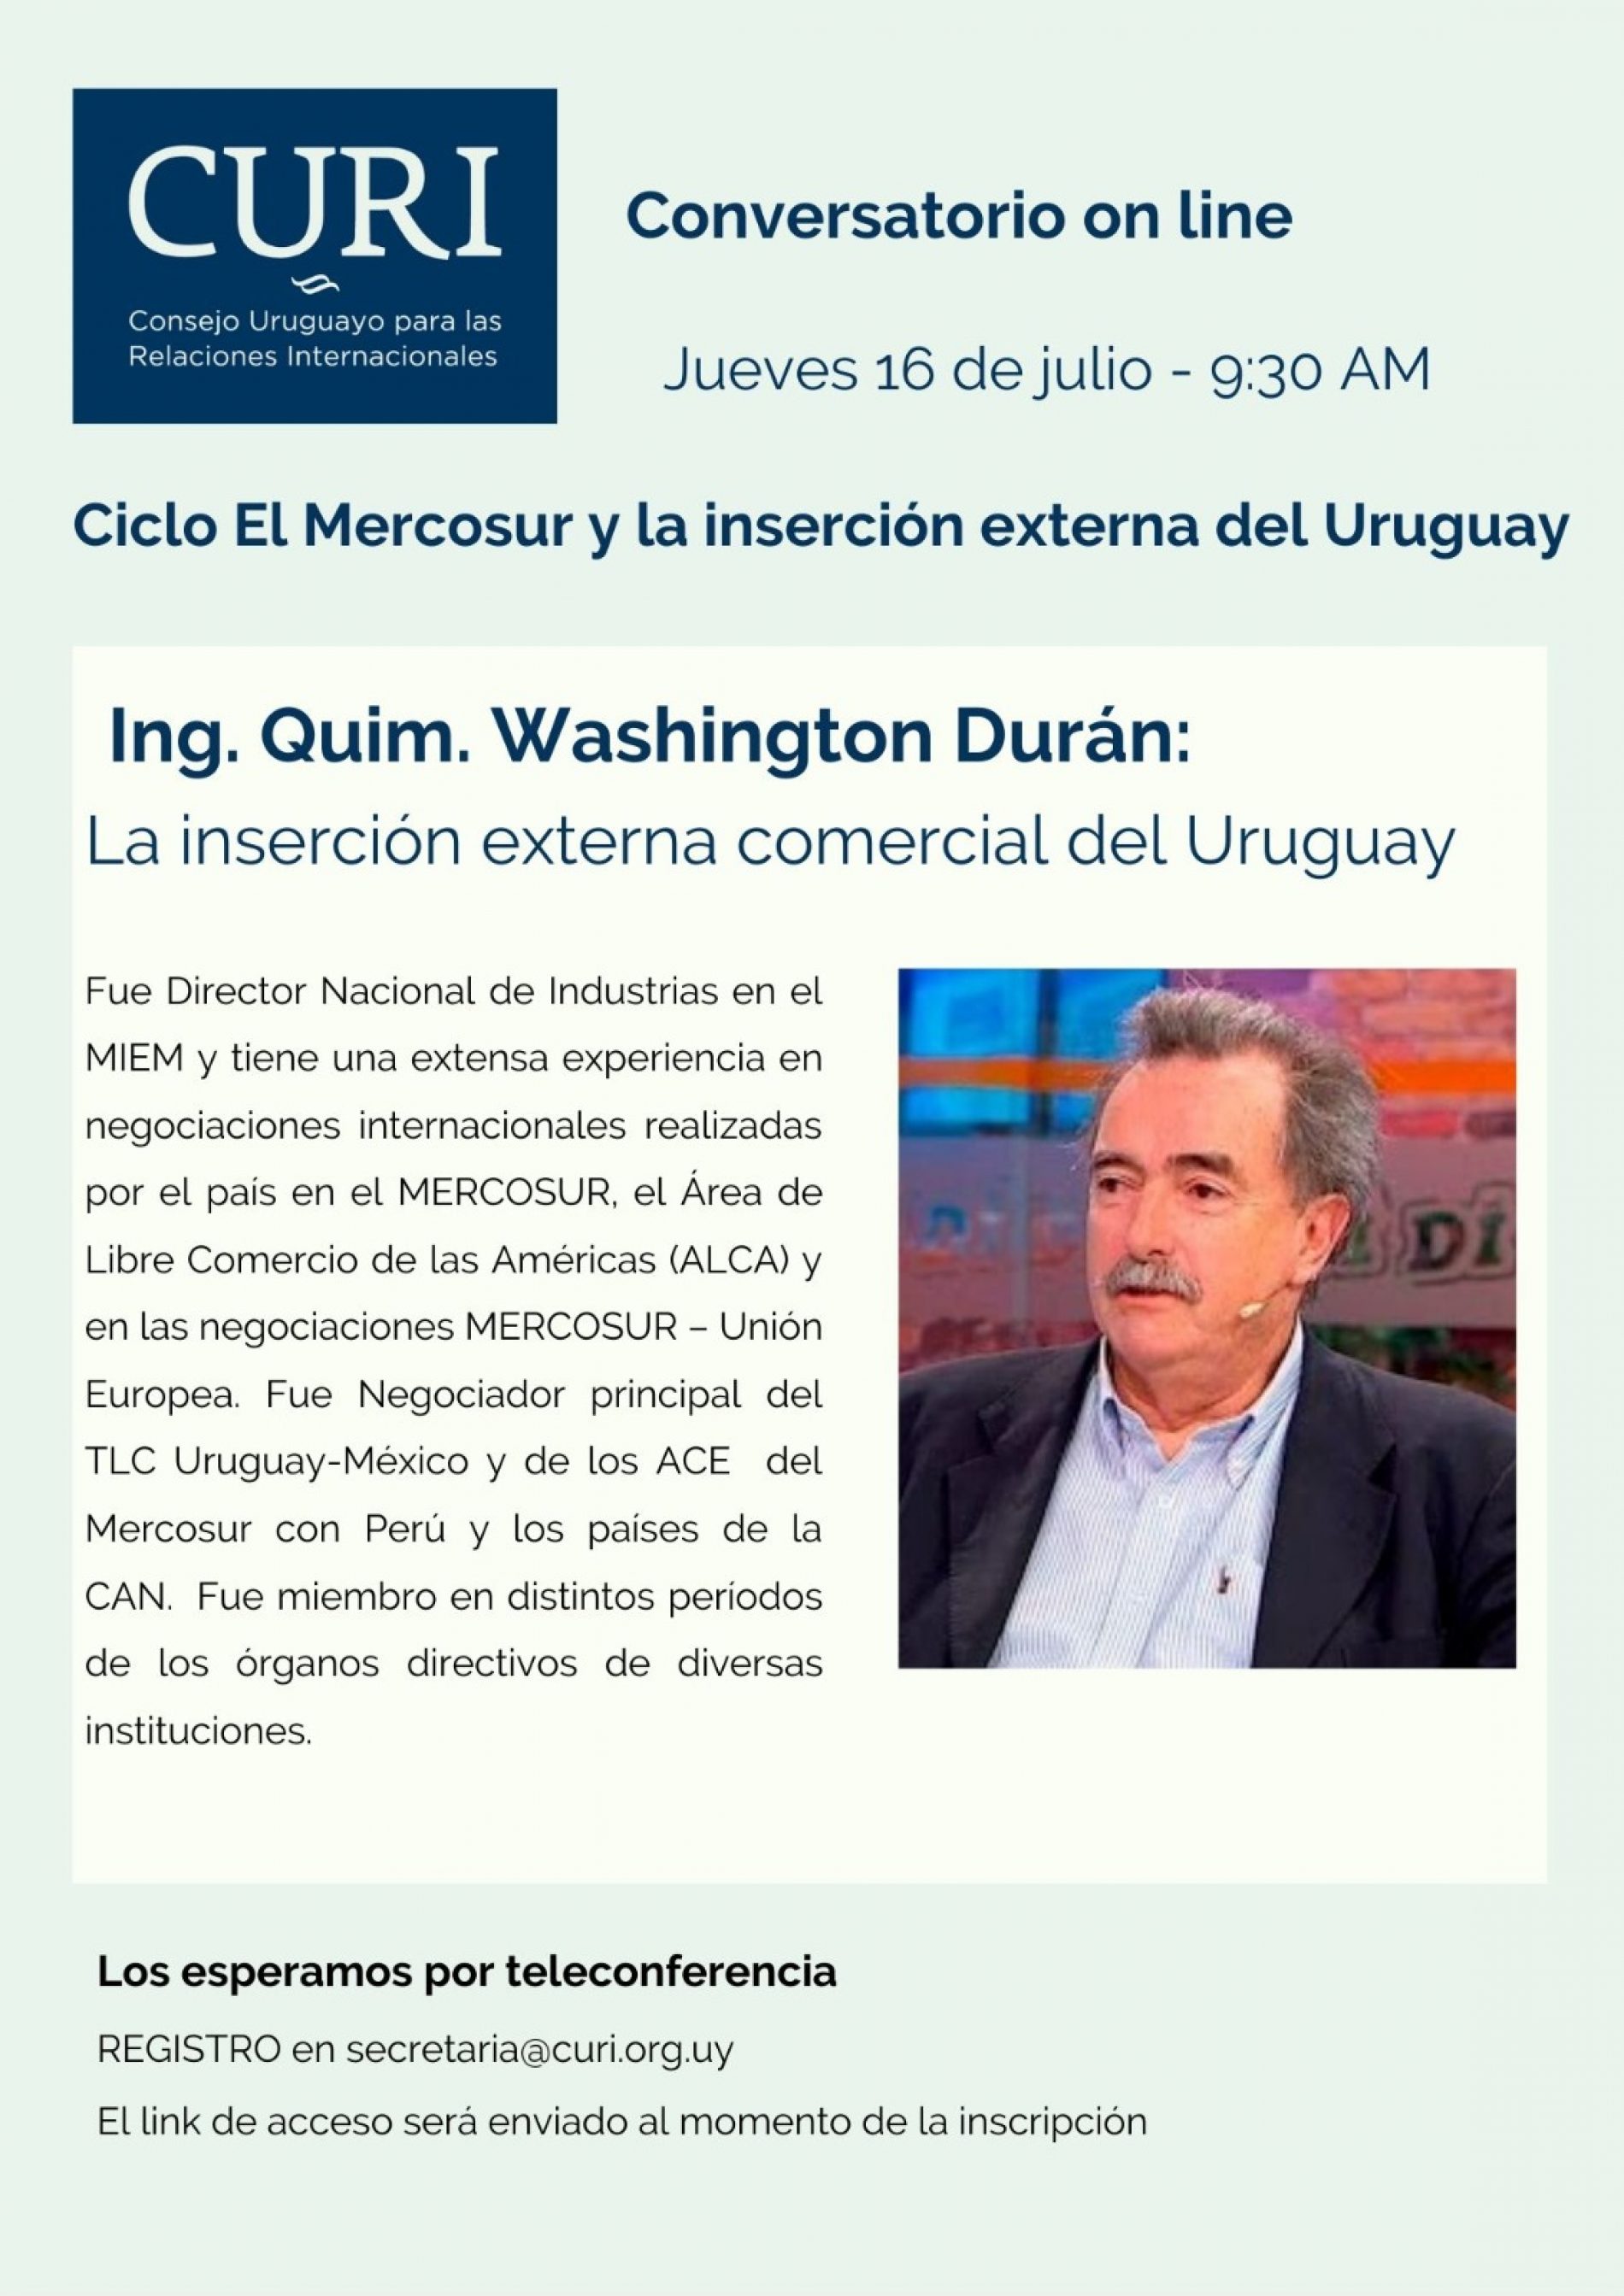 Ciclo El Mercosur con Ing. Quim. Washington Durán